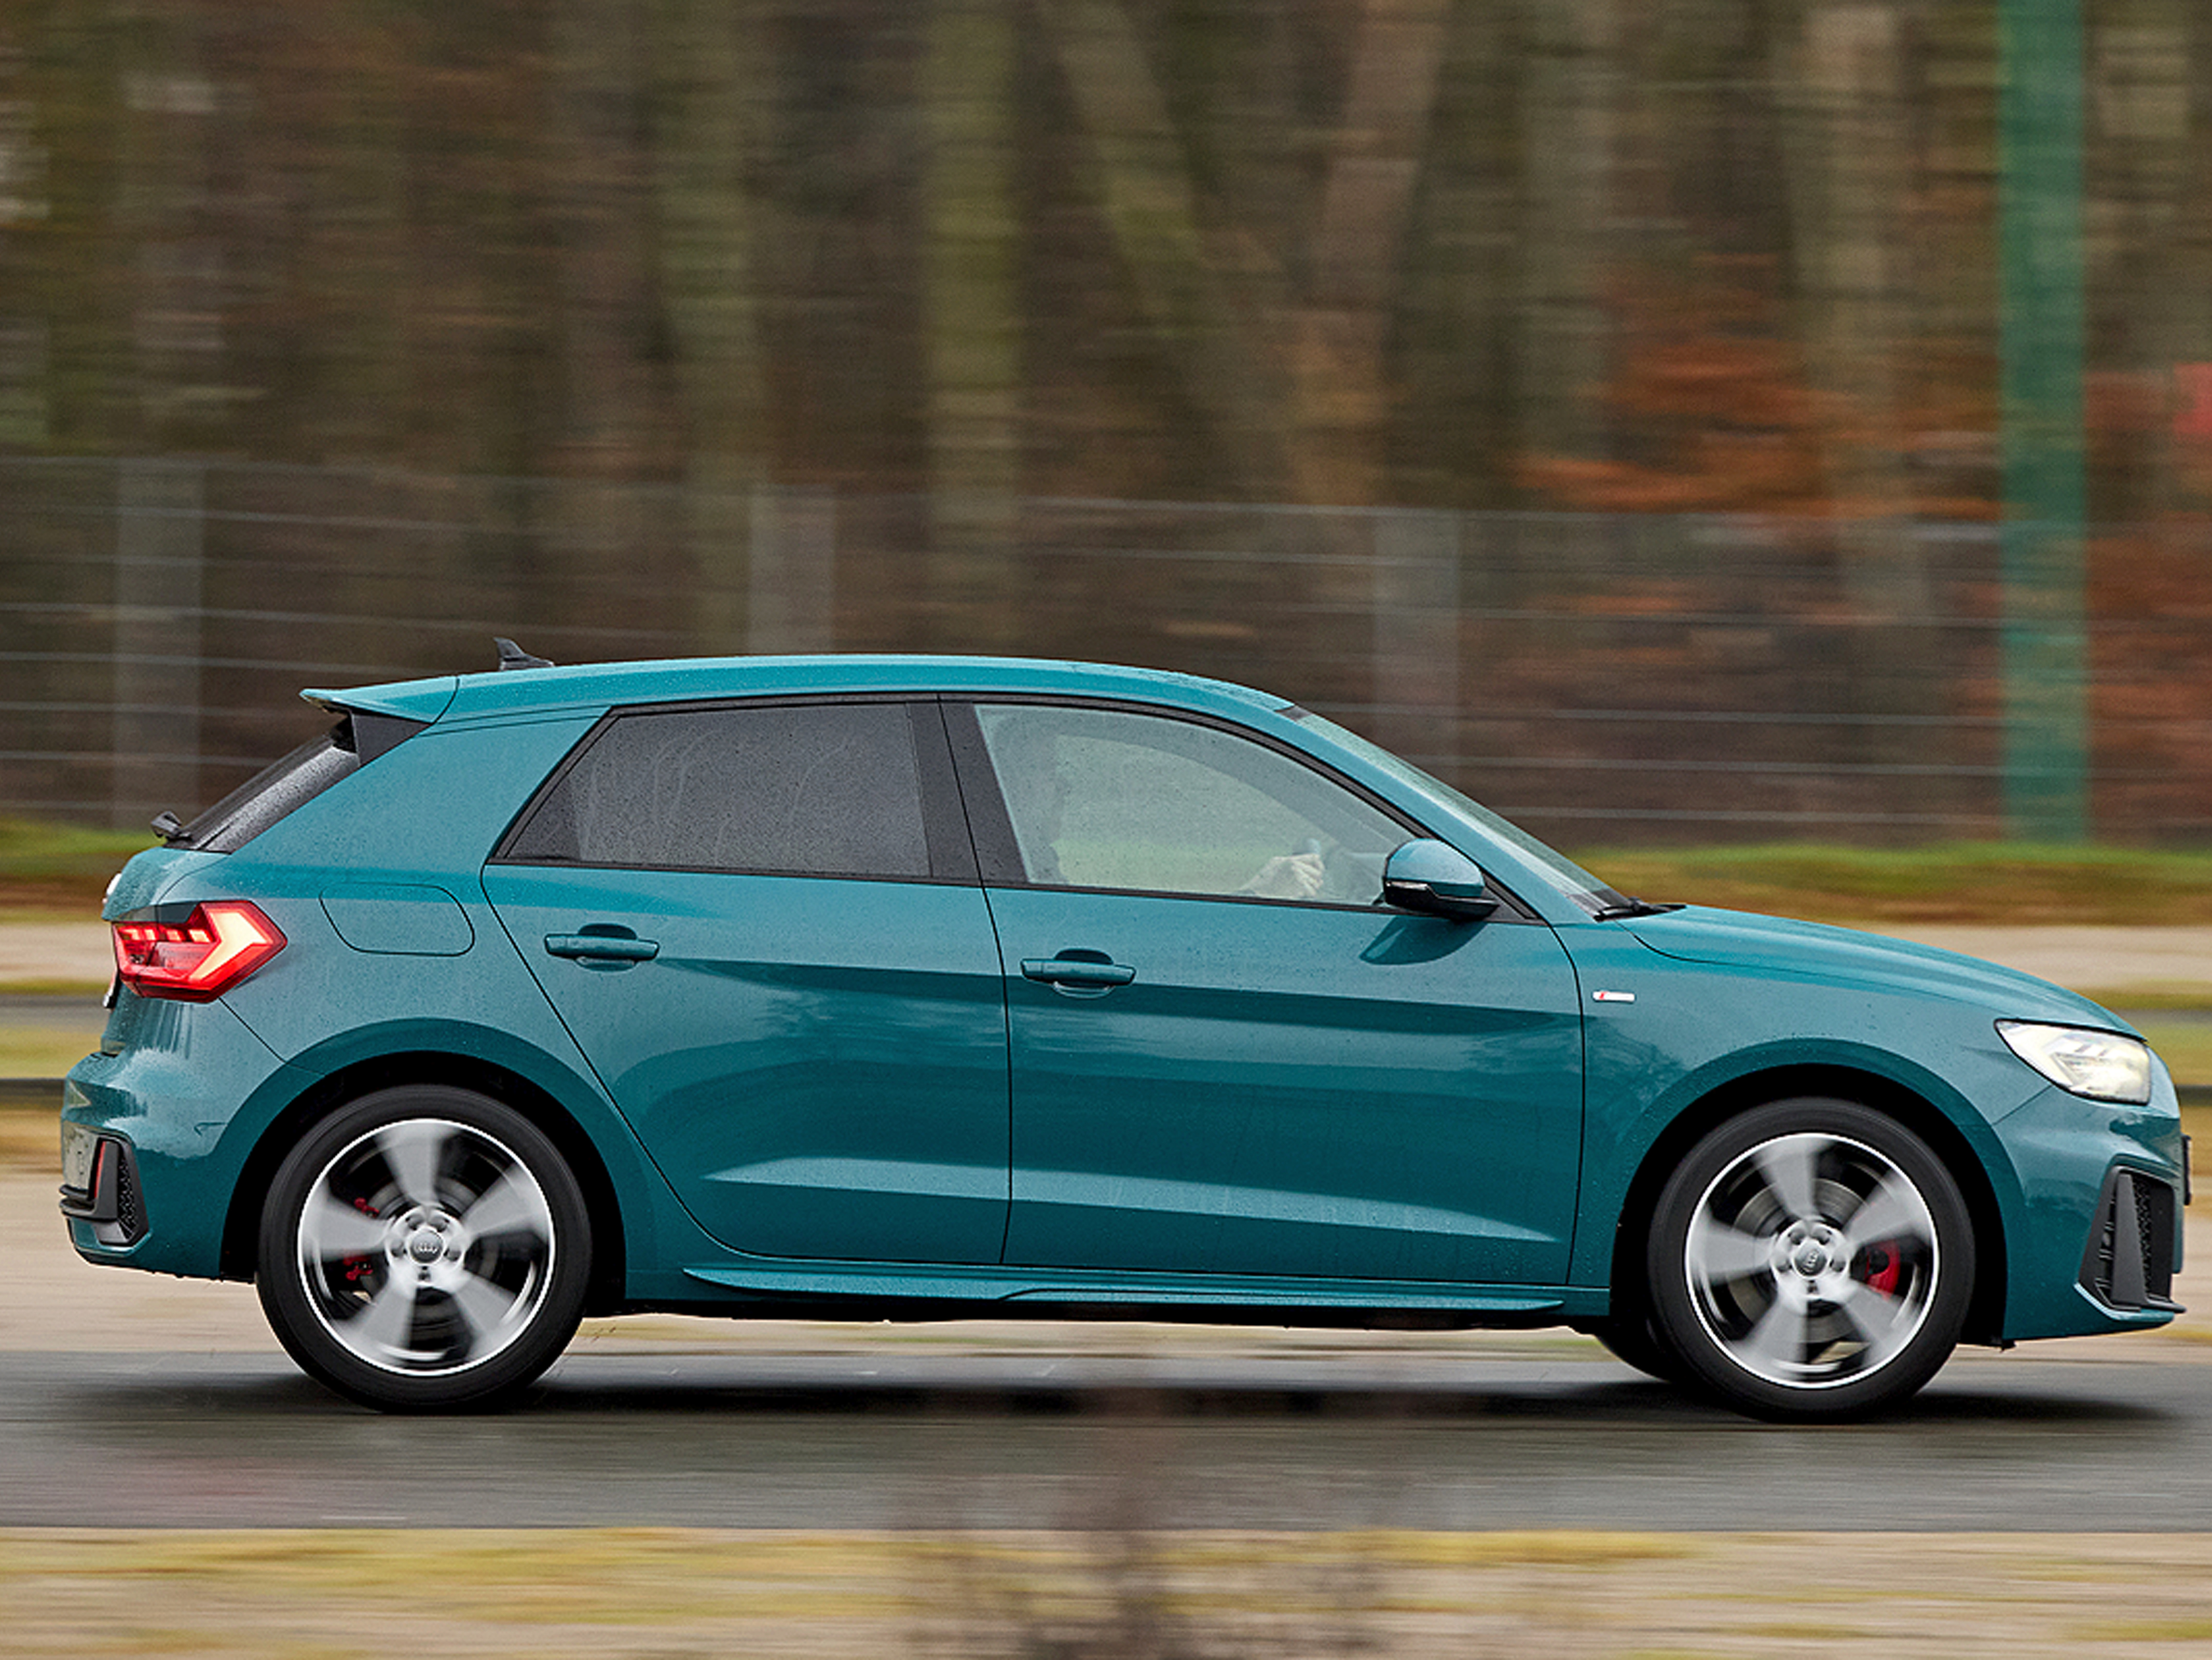 Audi A1 im Fahrbericht: Erste Fahrt im neuen Premium-Kleinwagen